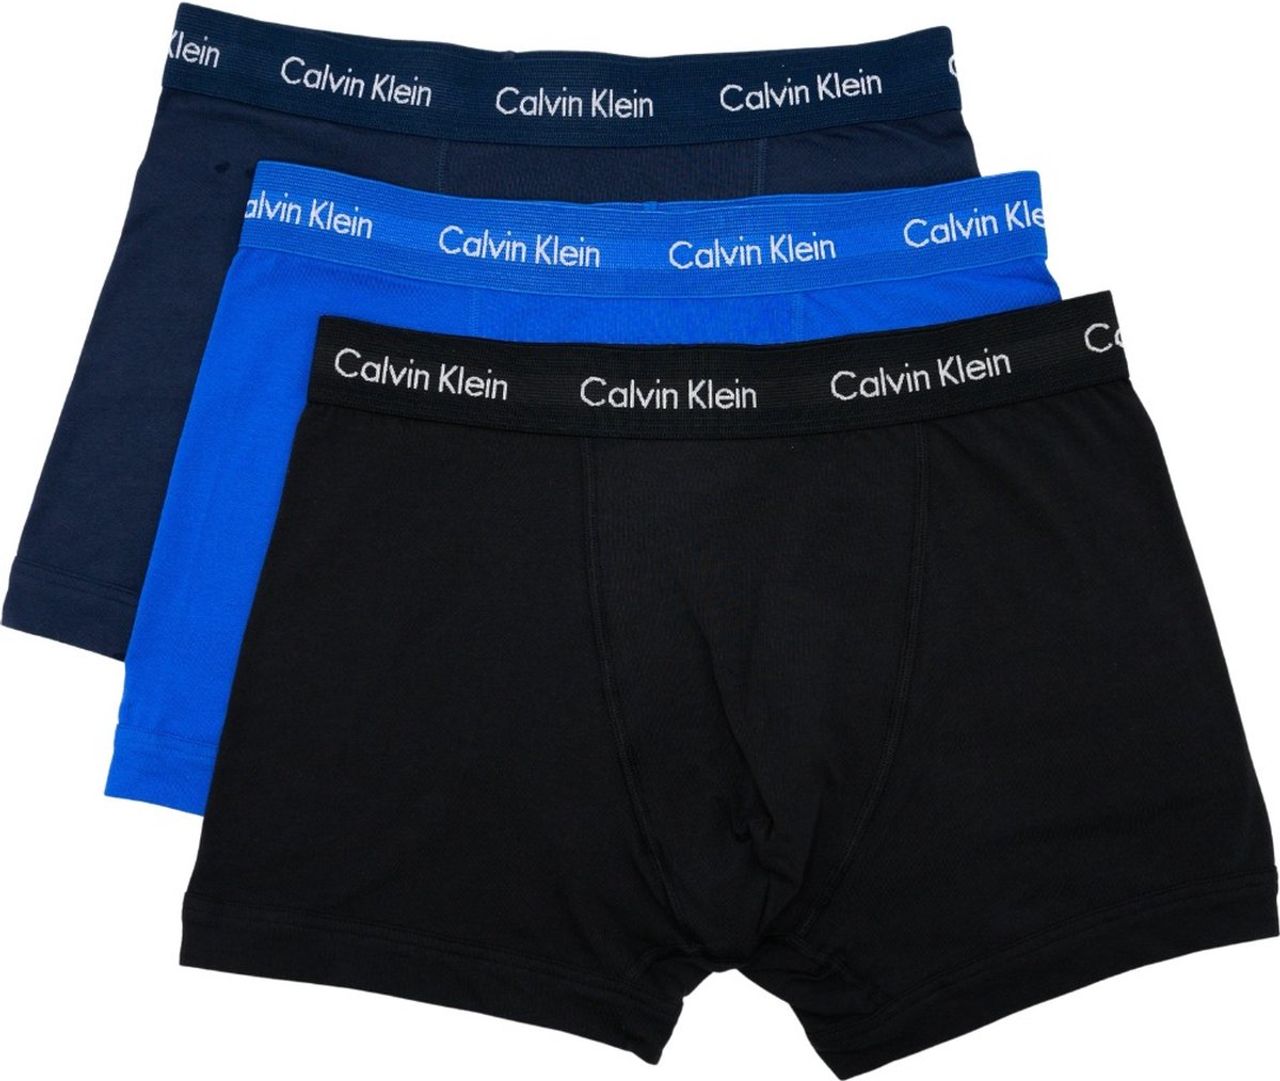 Calvin Klein Boxershorts - Heren - 3-pack - Blauw/Zwart/Navy